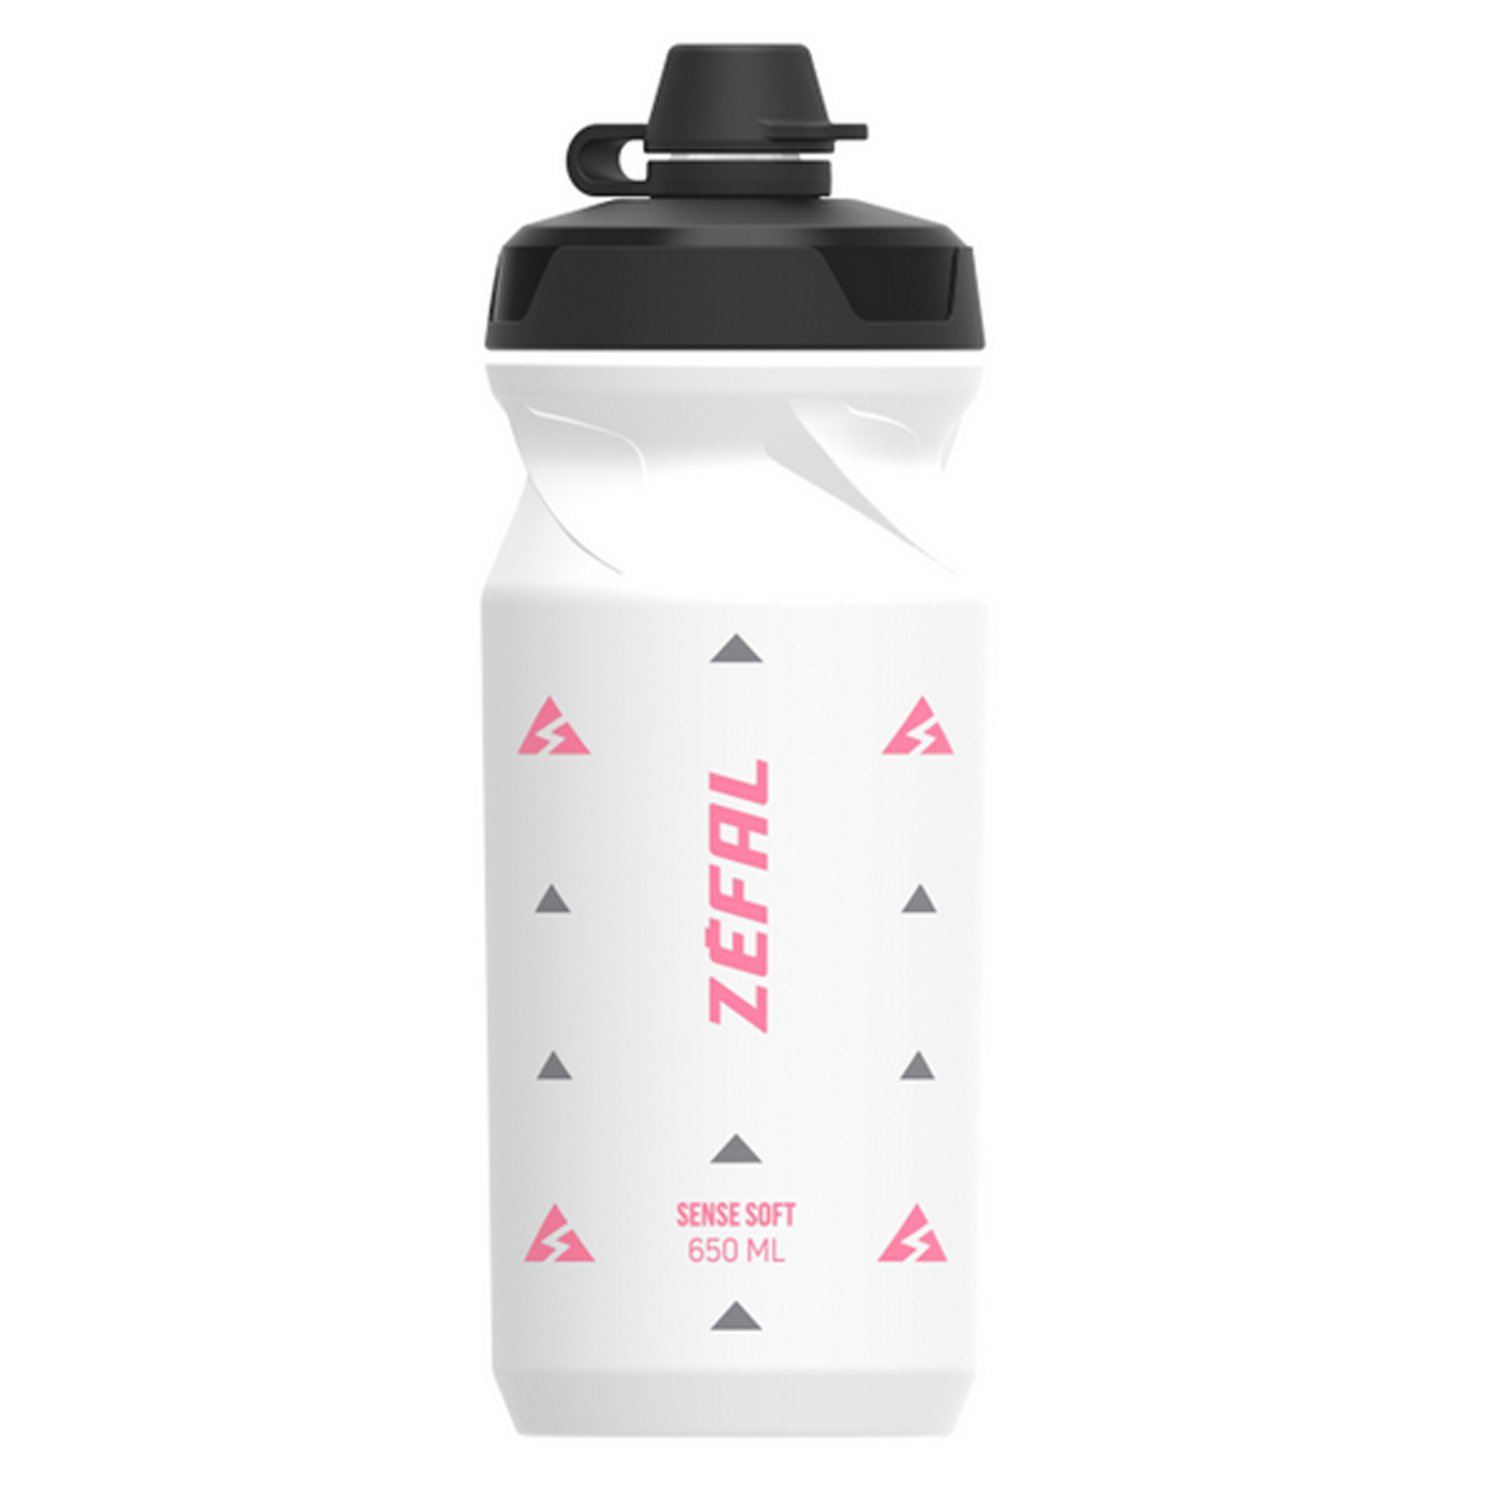 Фляга велосипедная Zefal Sense Soft 65 No-Mud Bottle, пластик, 650 мл, белый/розовый, 2023, 155R флягодержатель велосипедный zefal pulse a2 bottle cage пластик белый 2023 1767